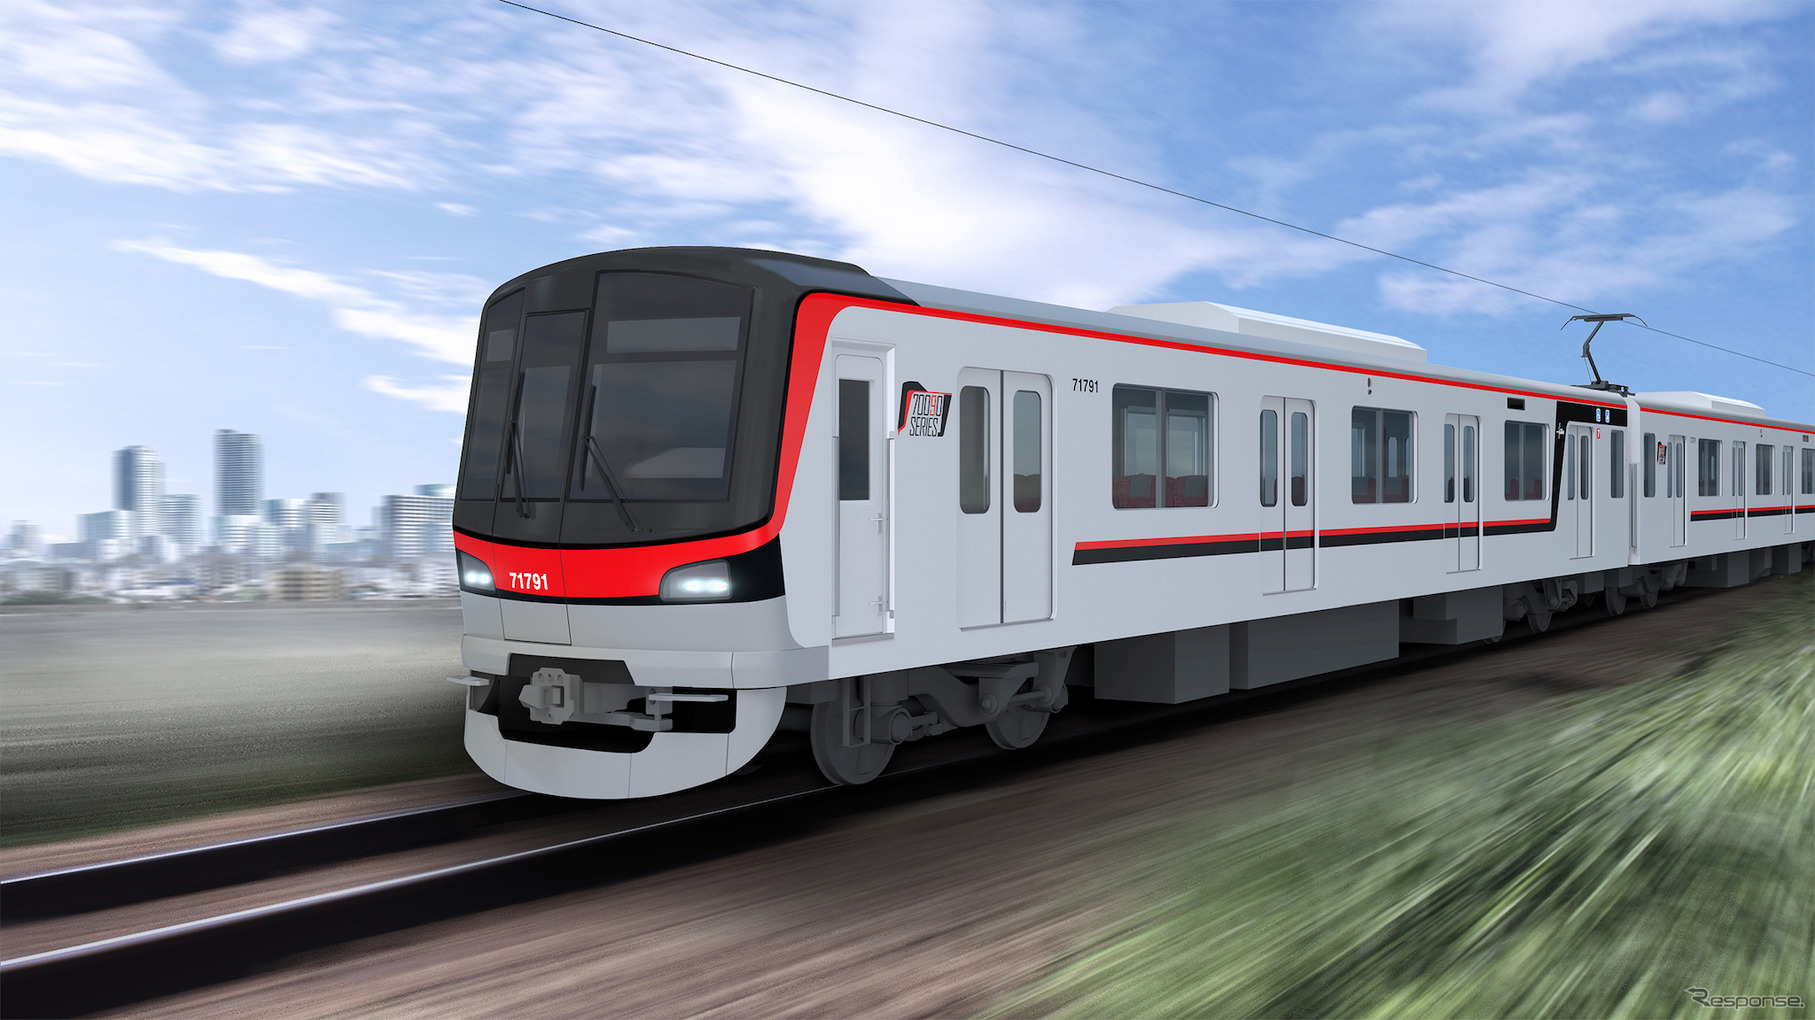 東京メトロ日比谷線へ直通する有料着席列車用に新造される東武70090形のイメージ。70000系をベースにした車両で、2019年度は4編成が登場予定。